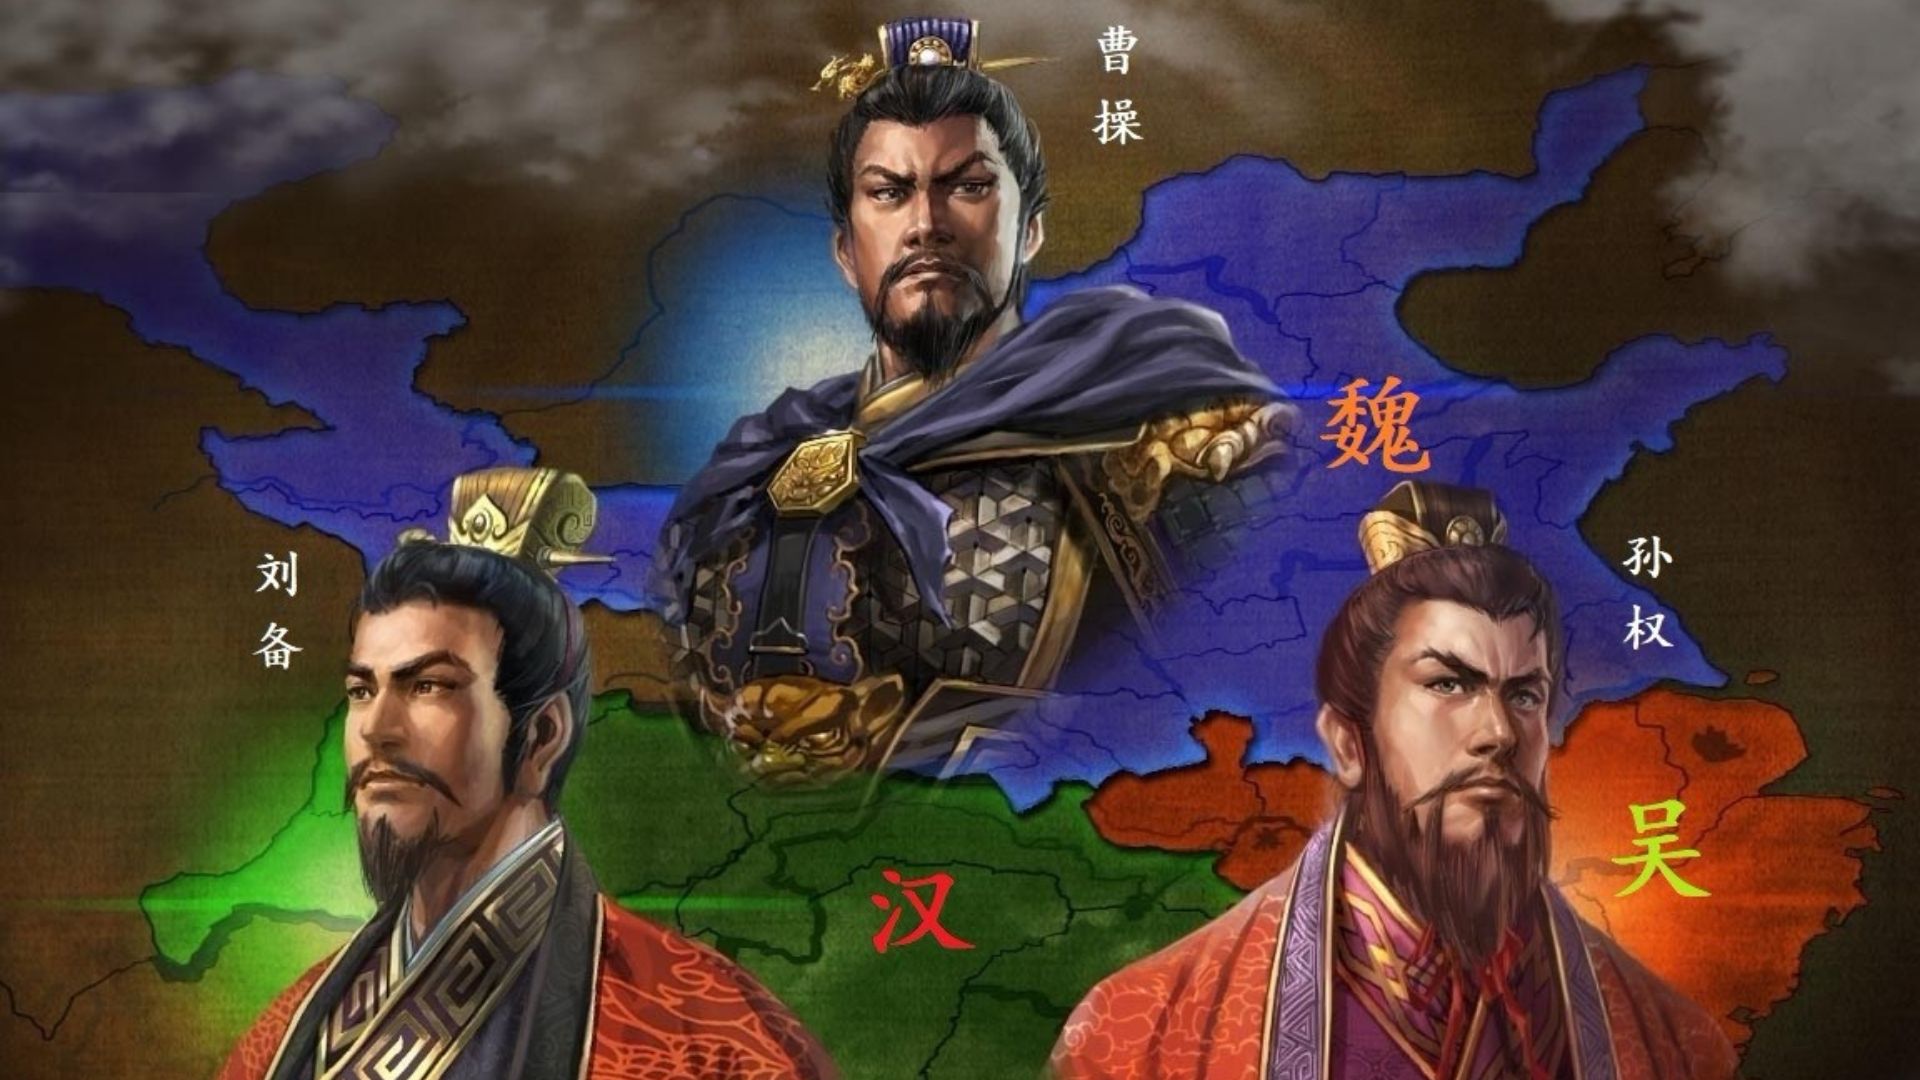 O Período dos Três Reinos 三国时代: Sua Forte Influência na Cultura Chinesa Permanece